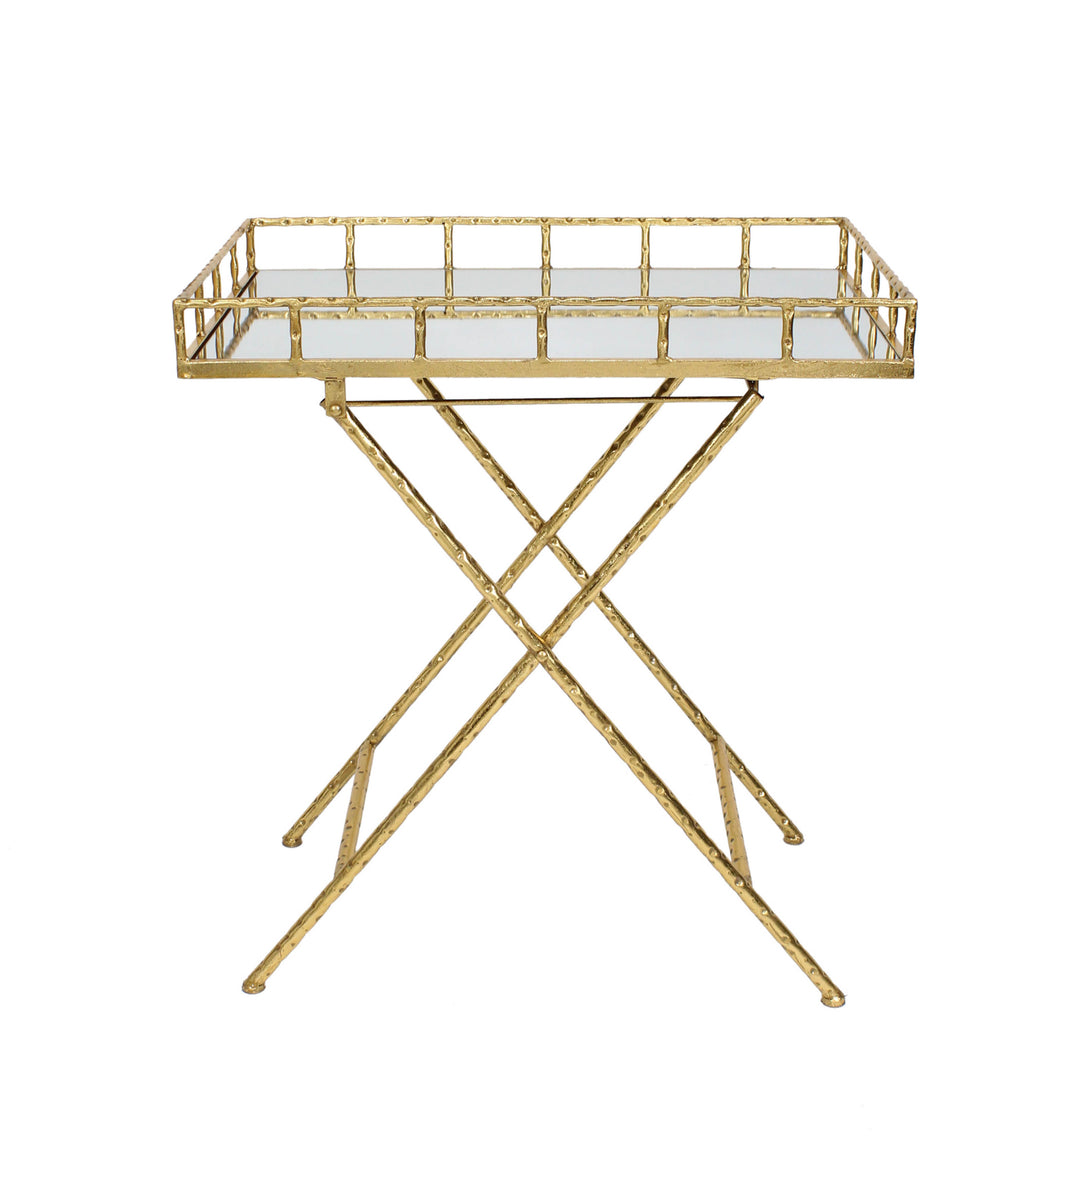 Rectangular Gold Metal Bar Cart, Mirror Top